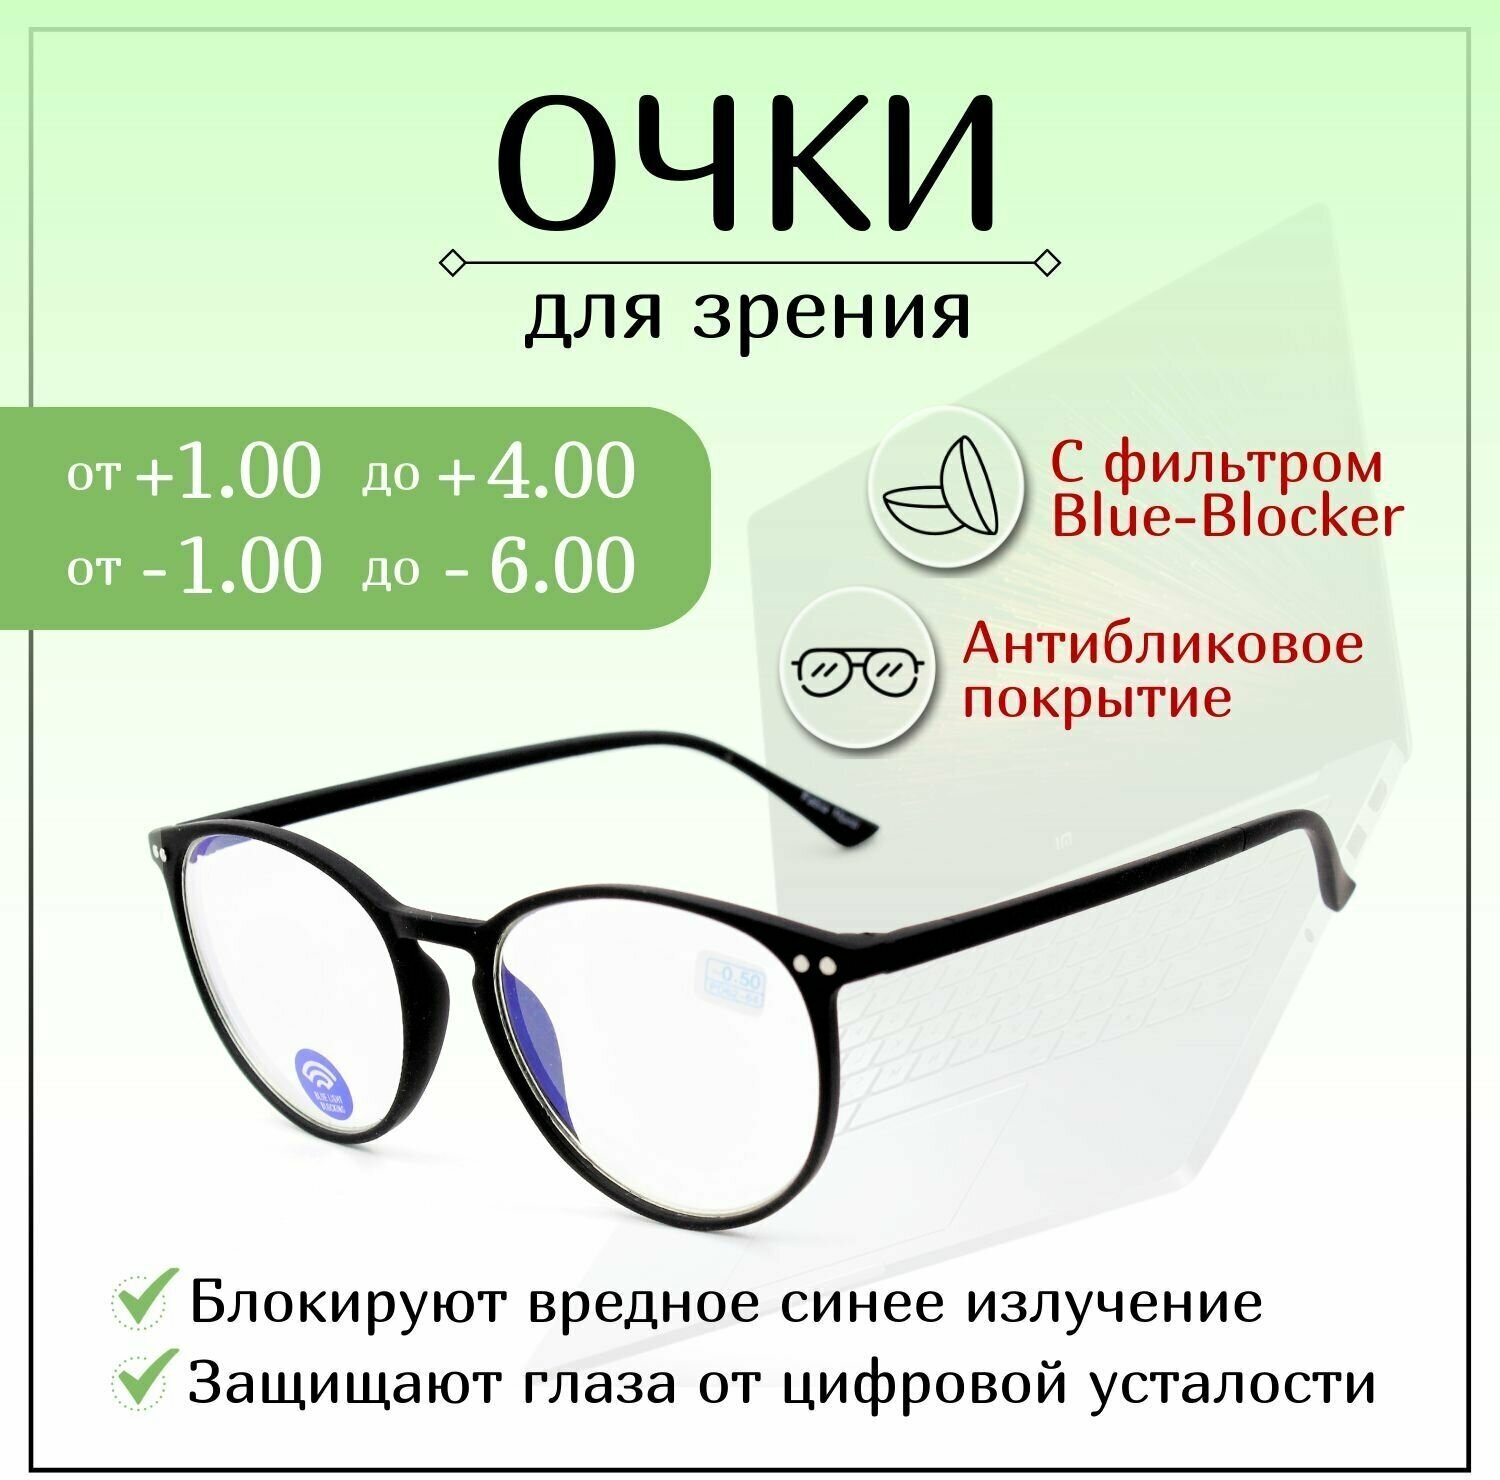 Готовые очки для зрения с диоптриями +4,00, FABIA MONTI готовые, женские, мужские, корригирующие